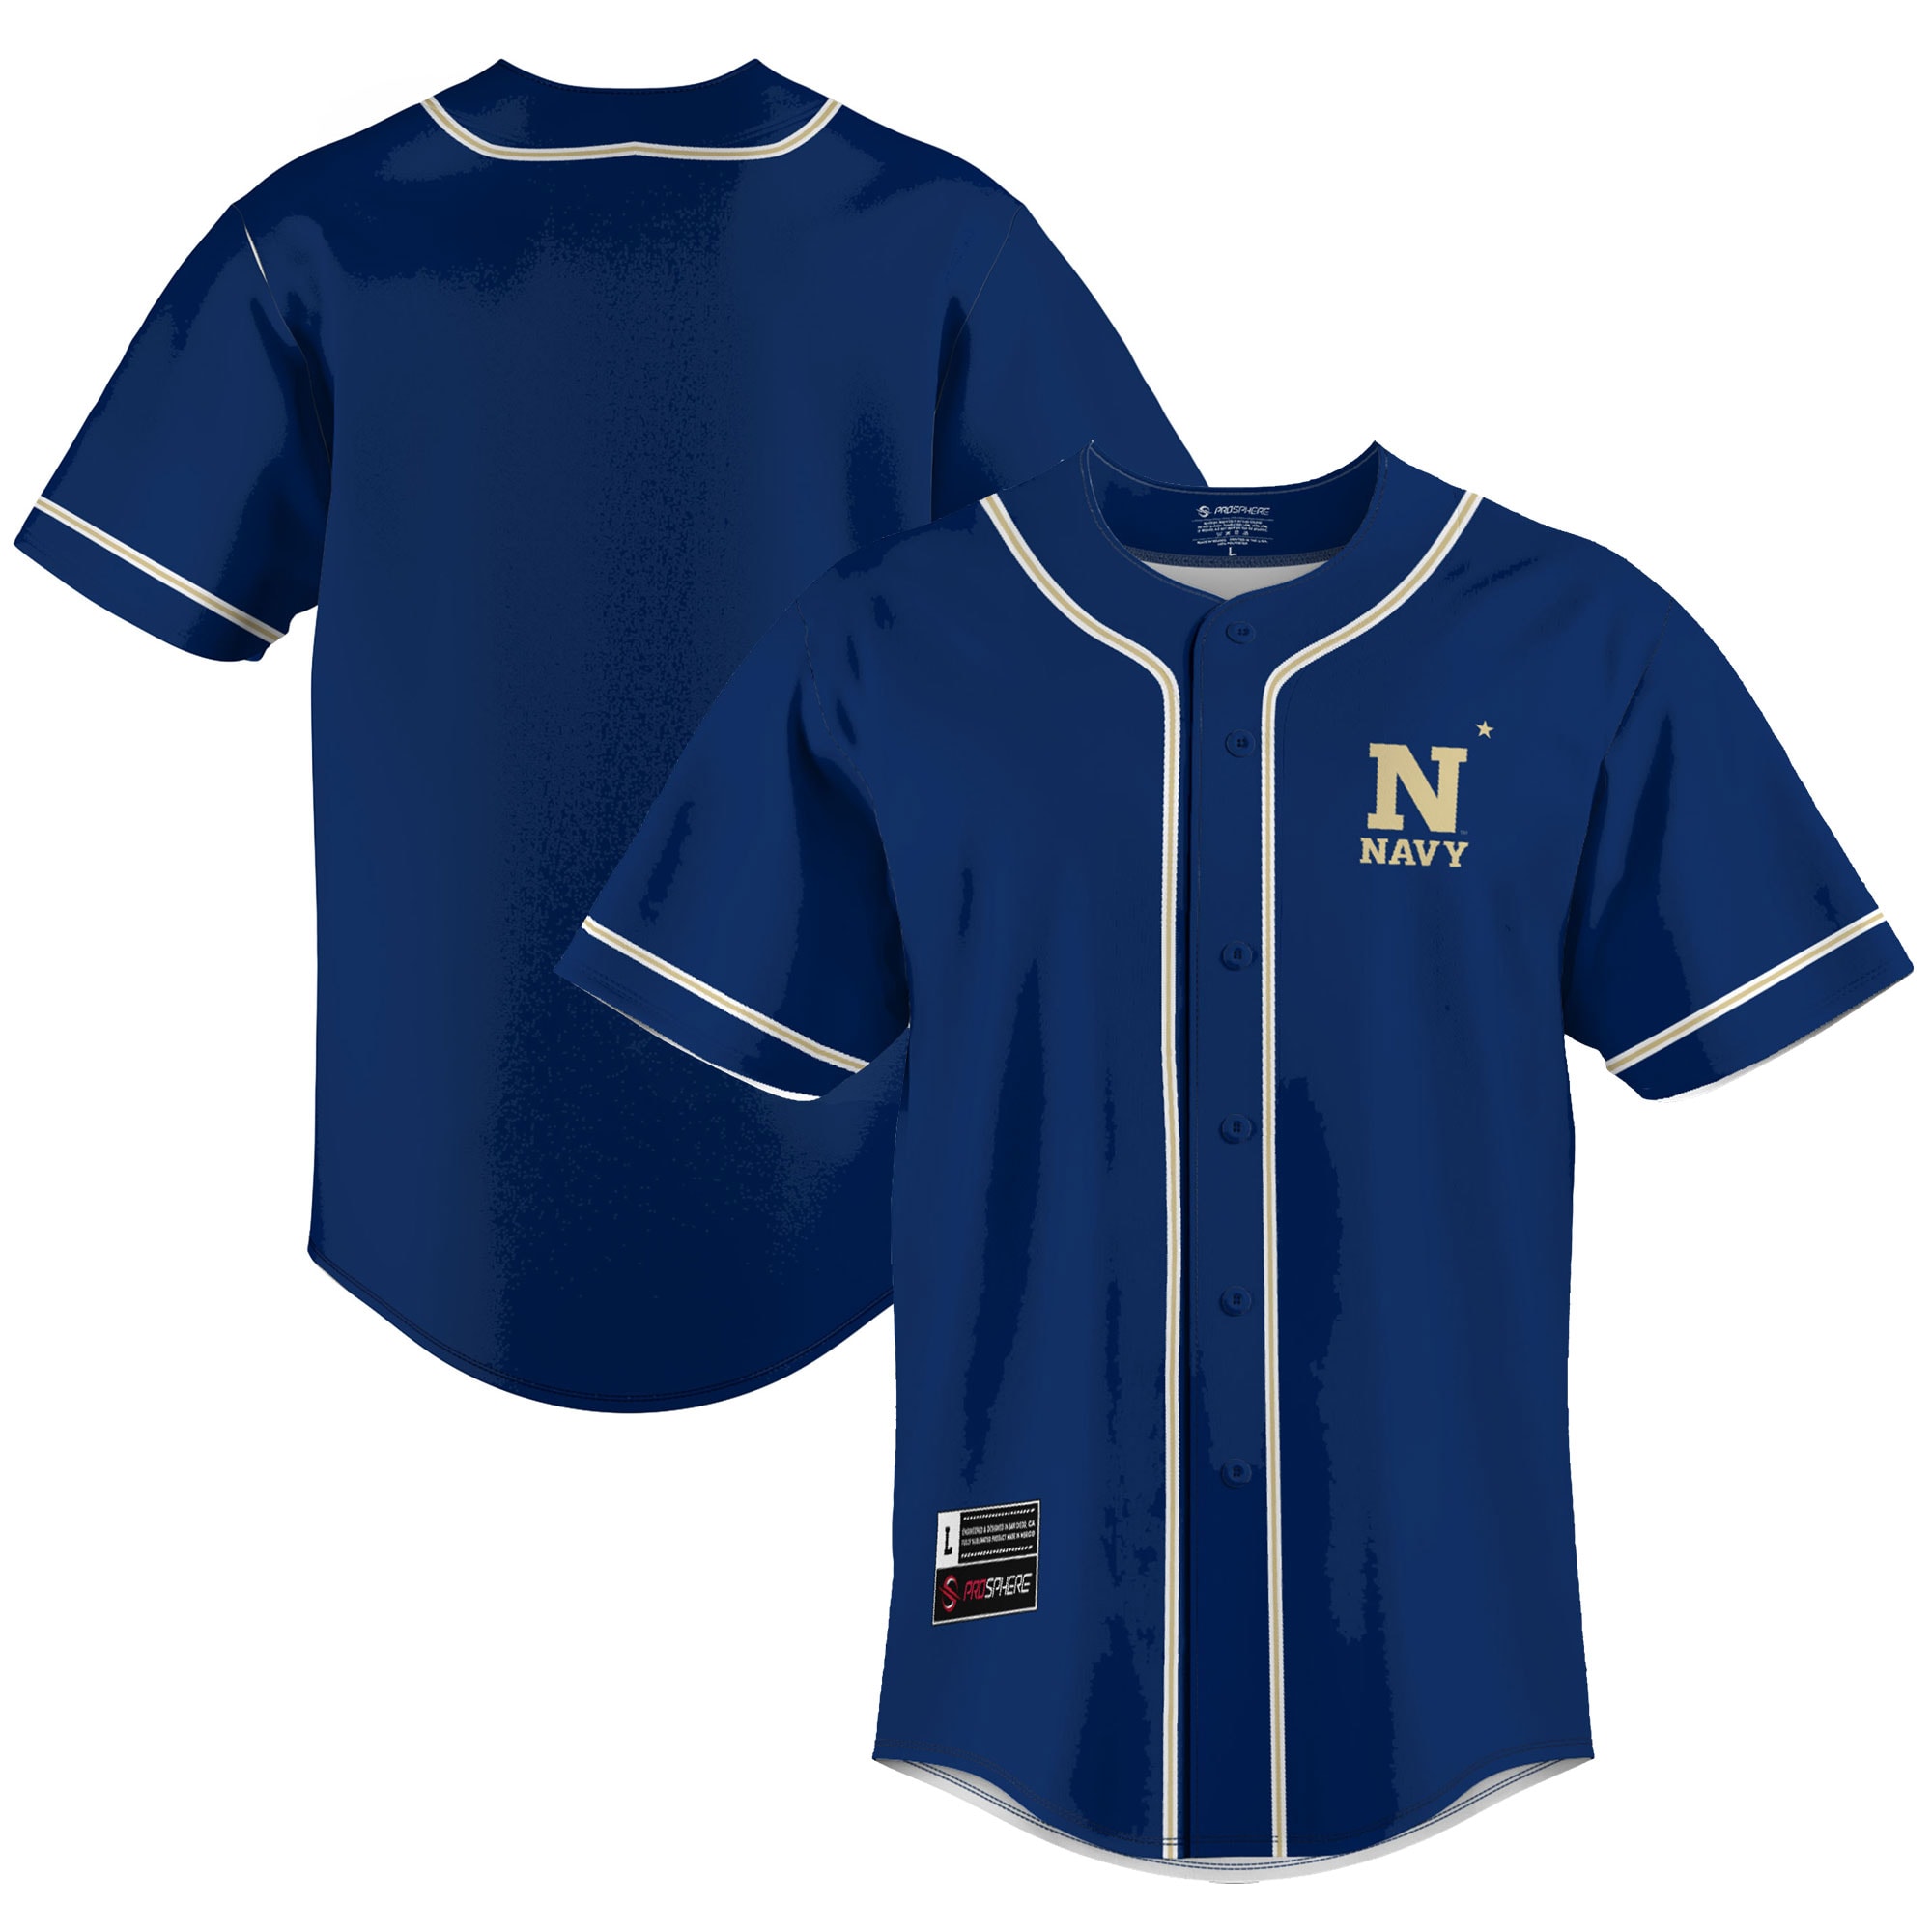 Navy Midshipmen Baseball Jersey - Navy For Youth Women Men